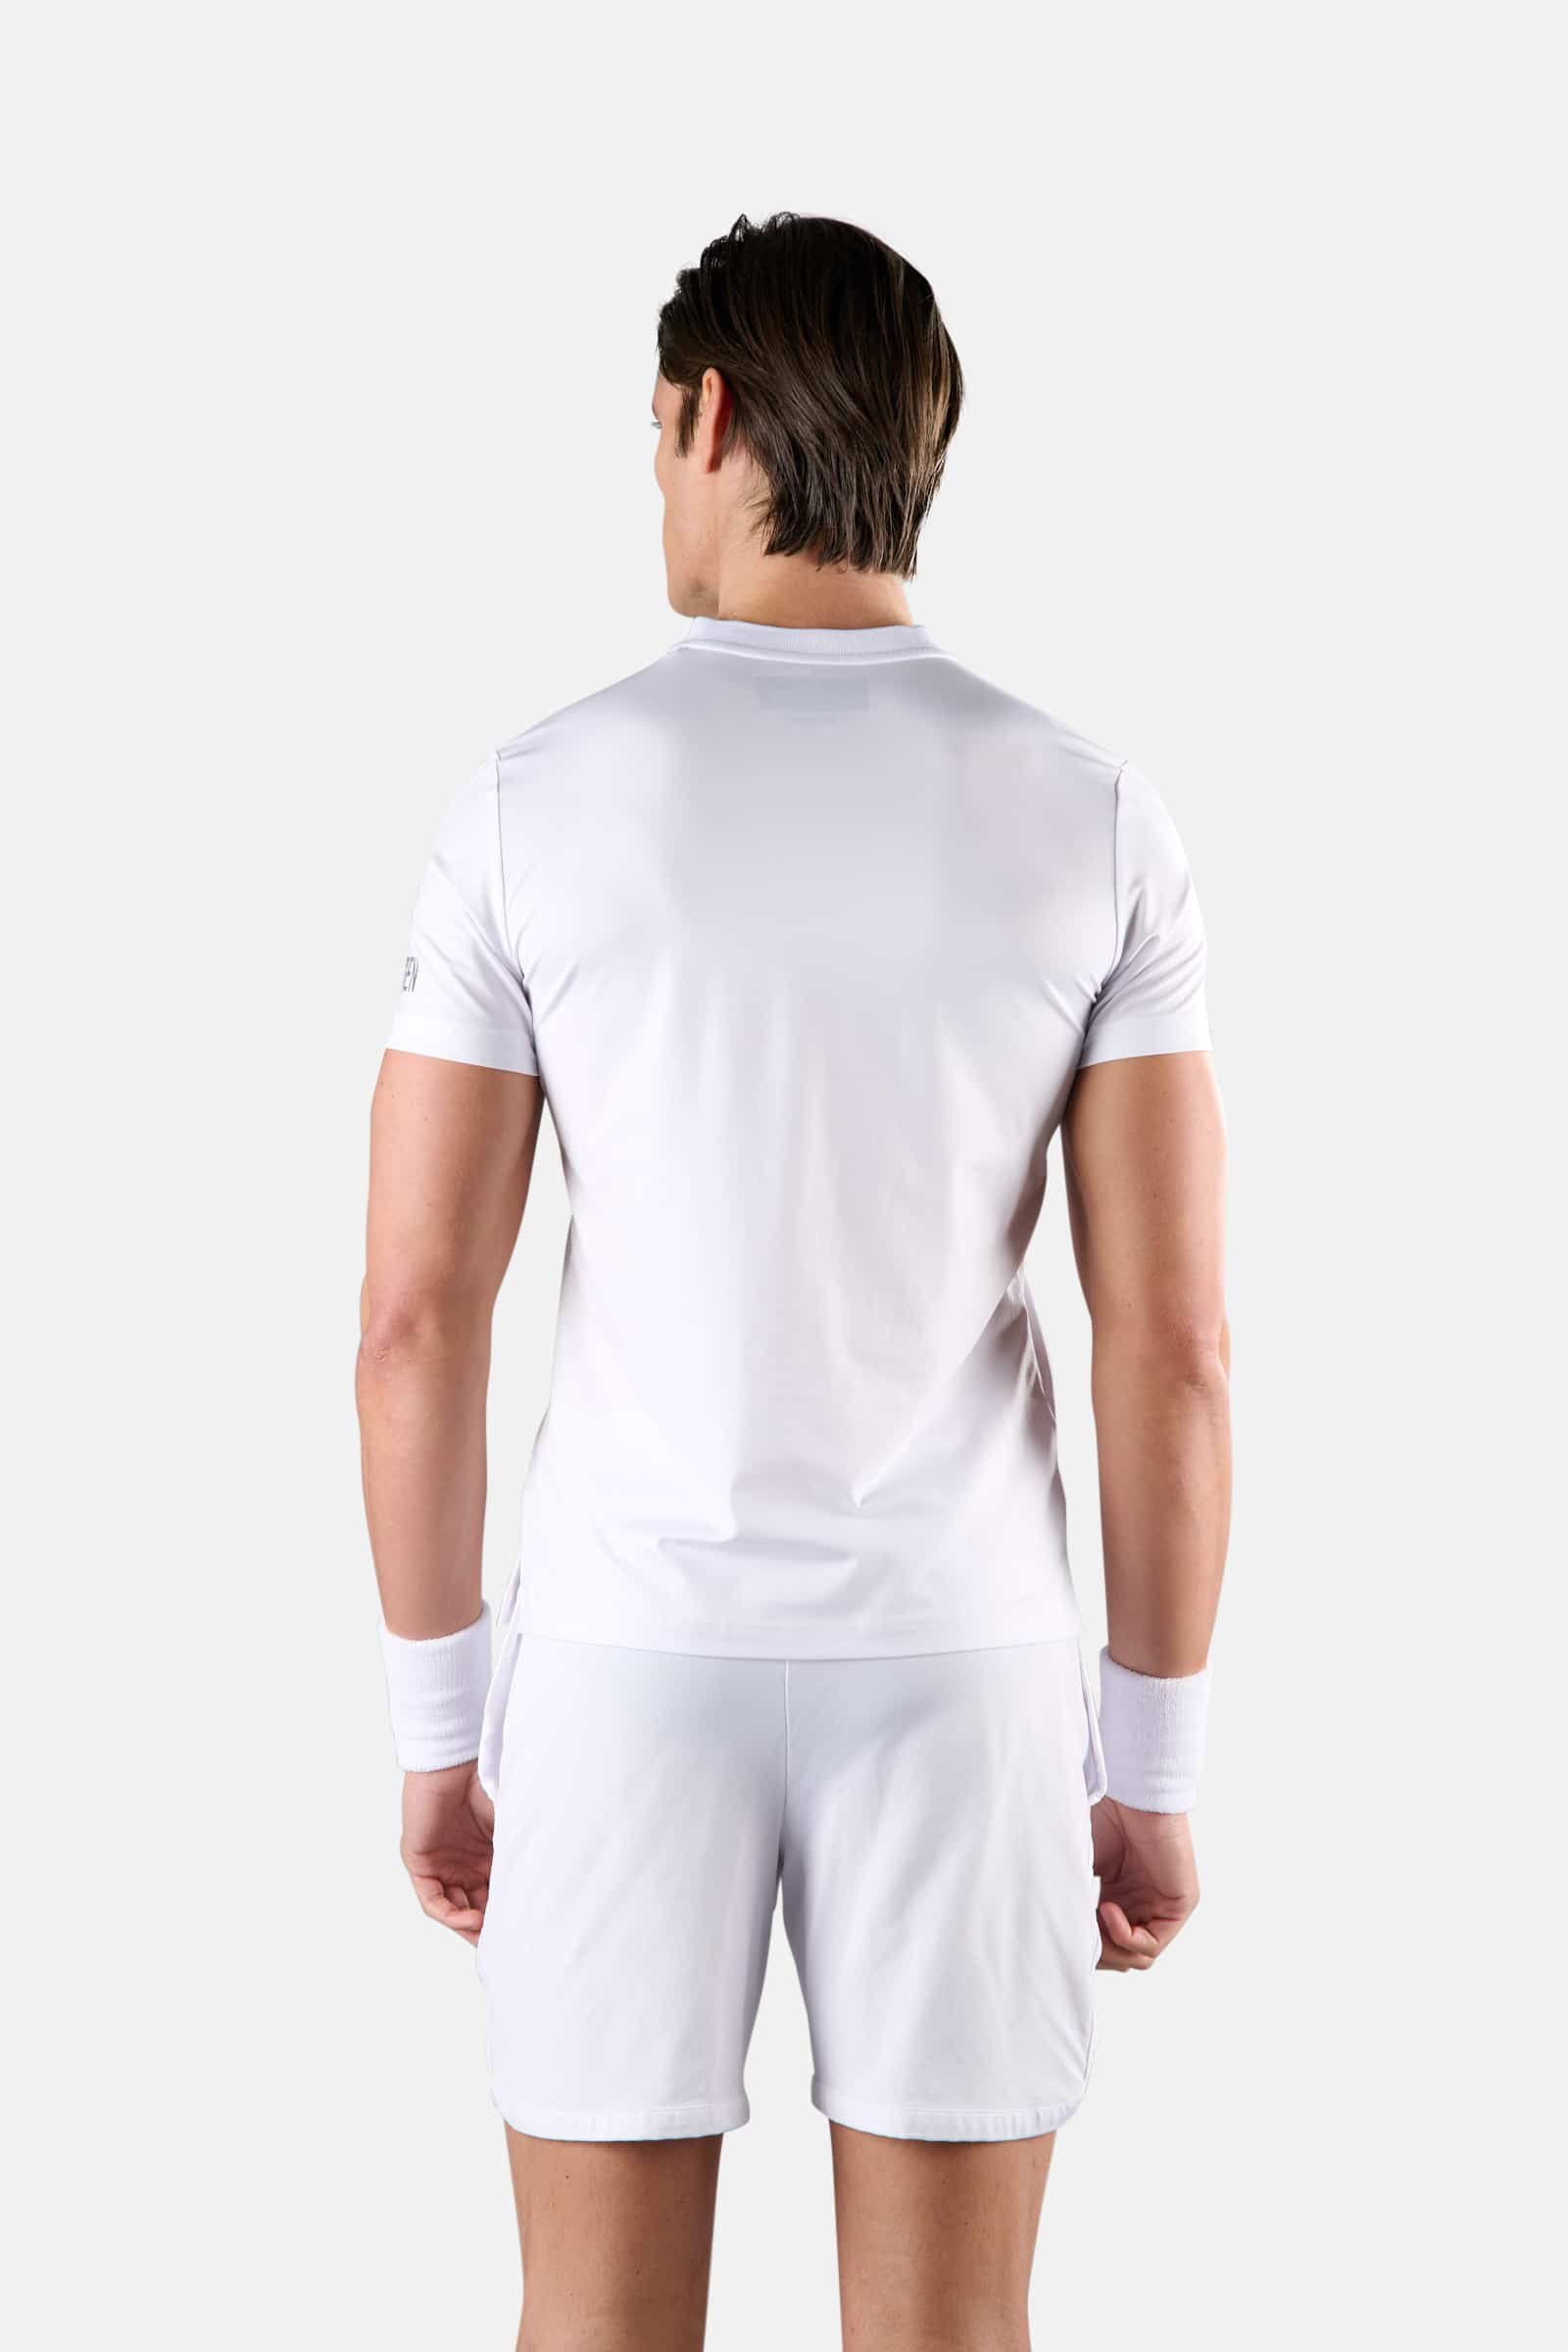 TECH SERAFINO - WHITE - Hydrogen - Luxury Sportwear